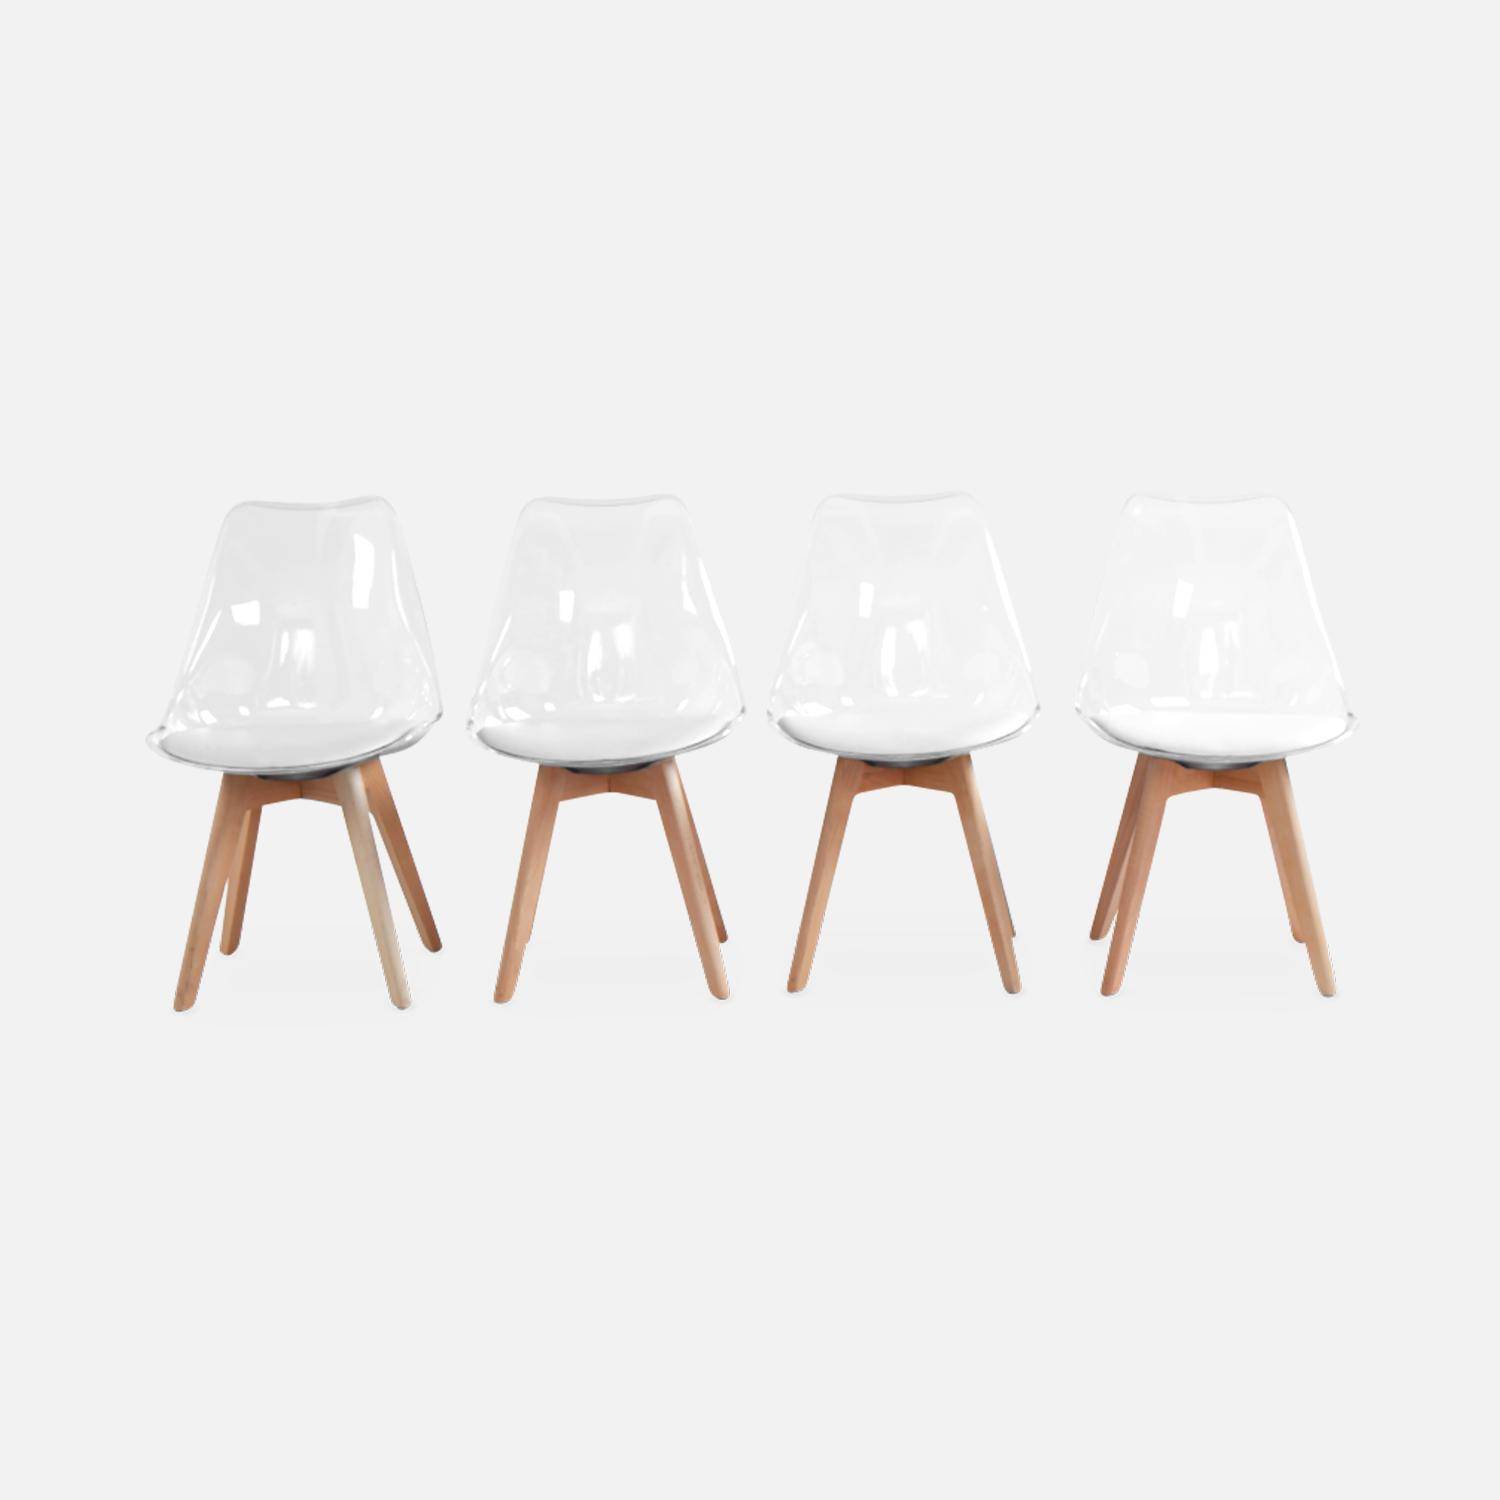 Juego de 4 sillas escandinavas - Lagertha - patas de madera, asientos individuales, cojín blanco, carcasa transparente  Photo4